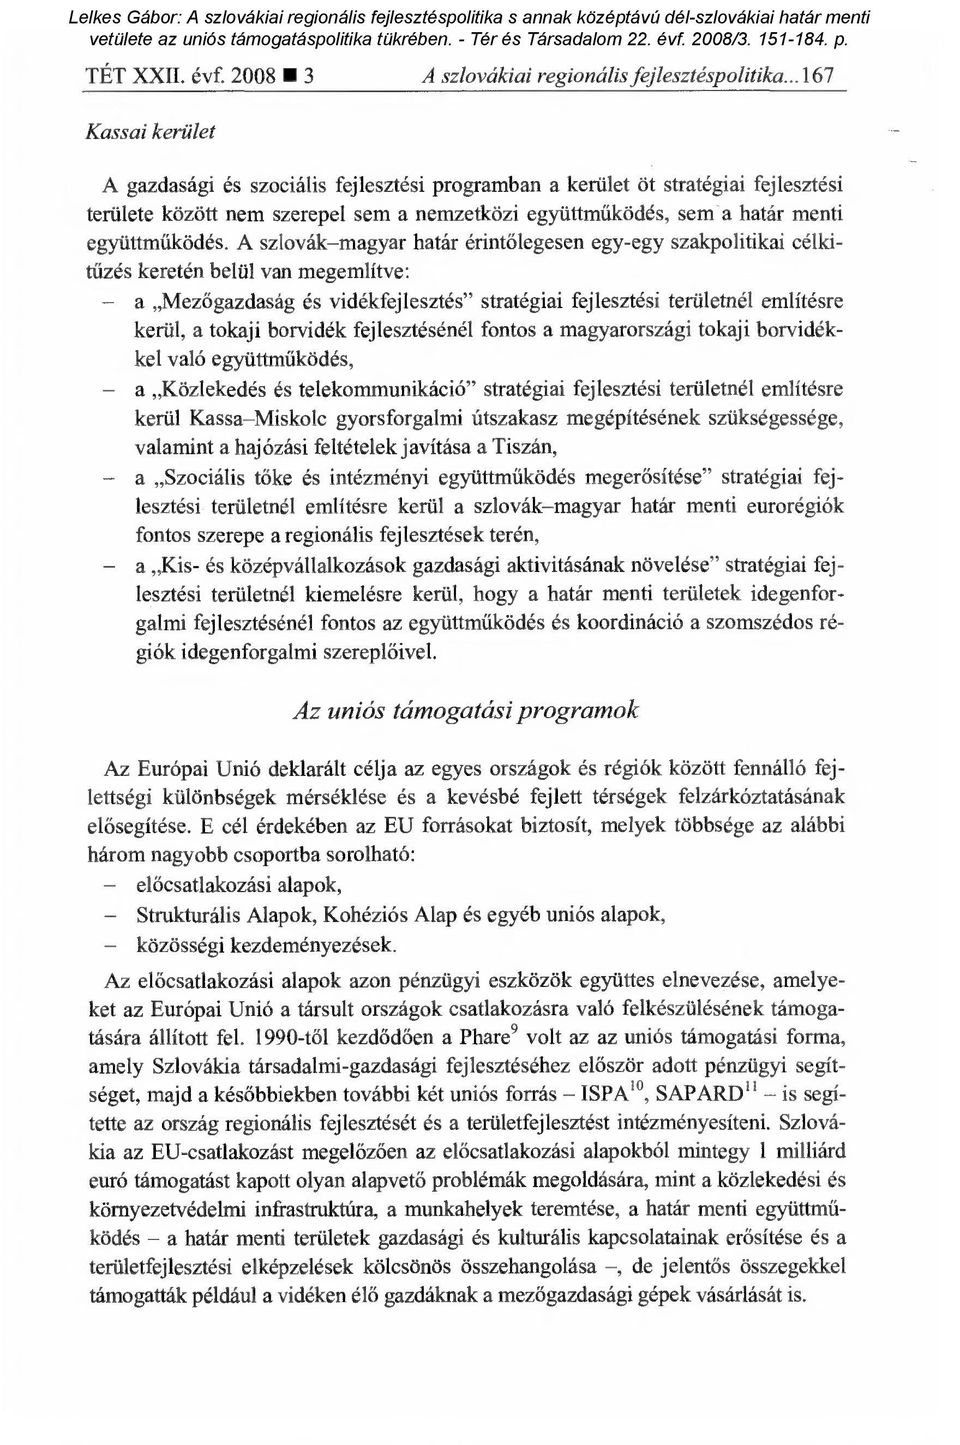 A szlovák magyar határ érint őlegesen egy-egy szakpolitikai célkitűzés keretén belül van megemlítve: a Mezőgazdaság és vidékfejlesztés" stratégiai fejlesztési területnél említésre kerül, a tokaji